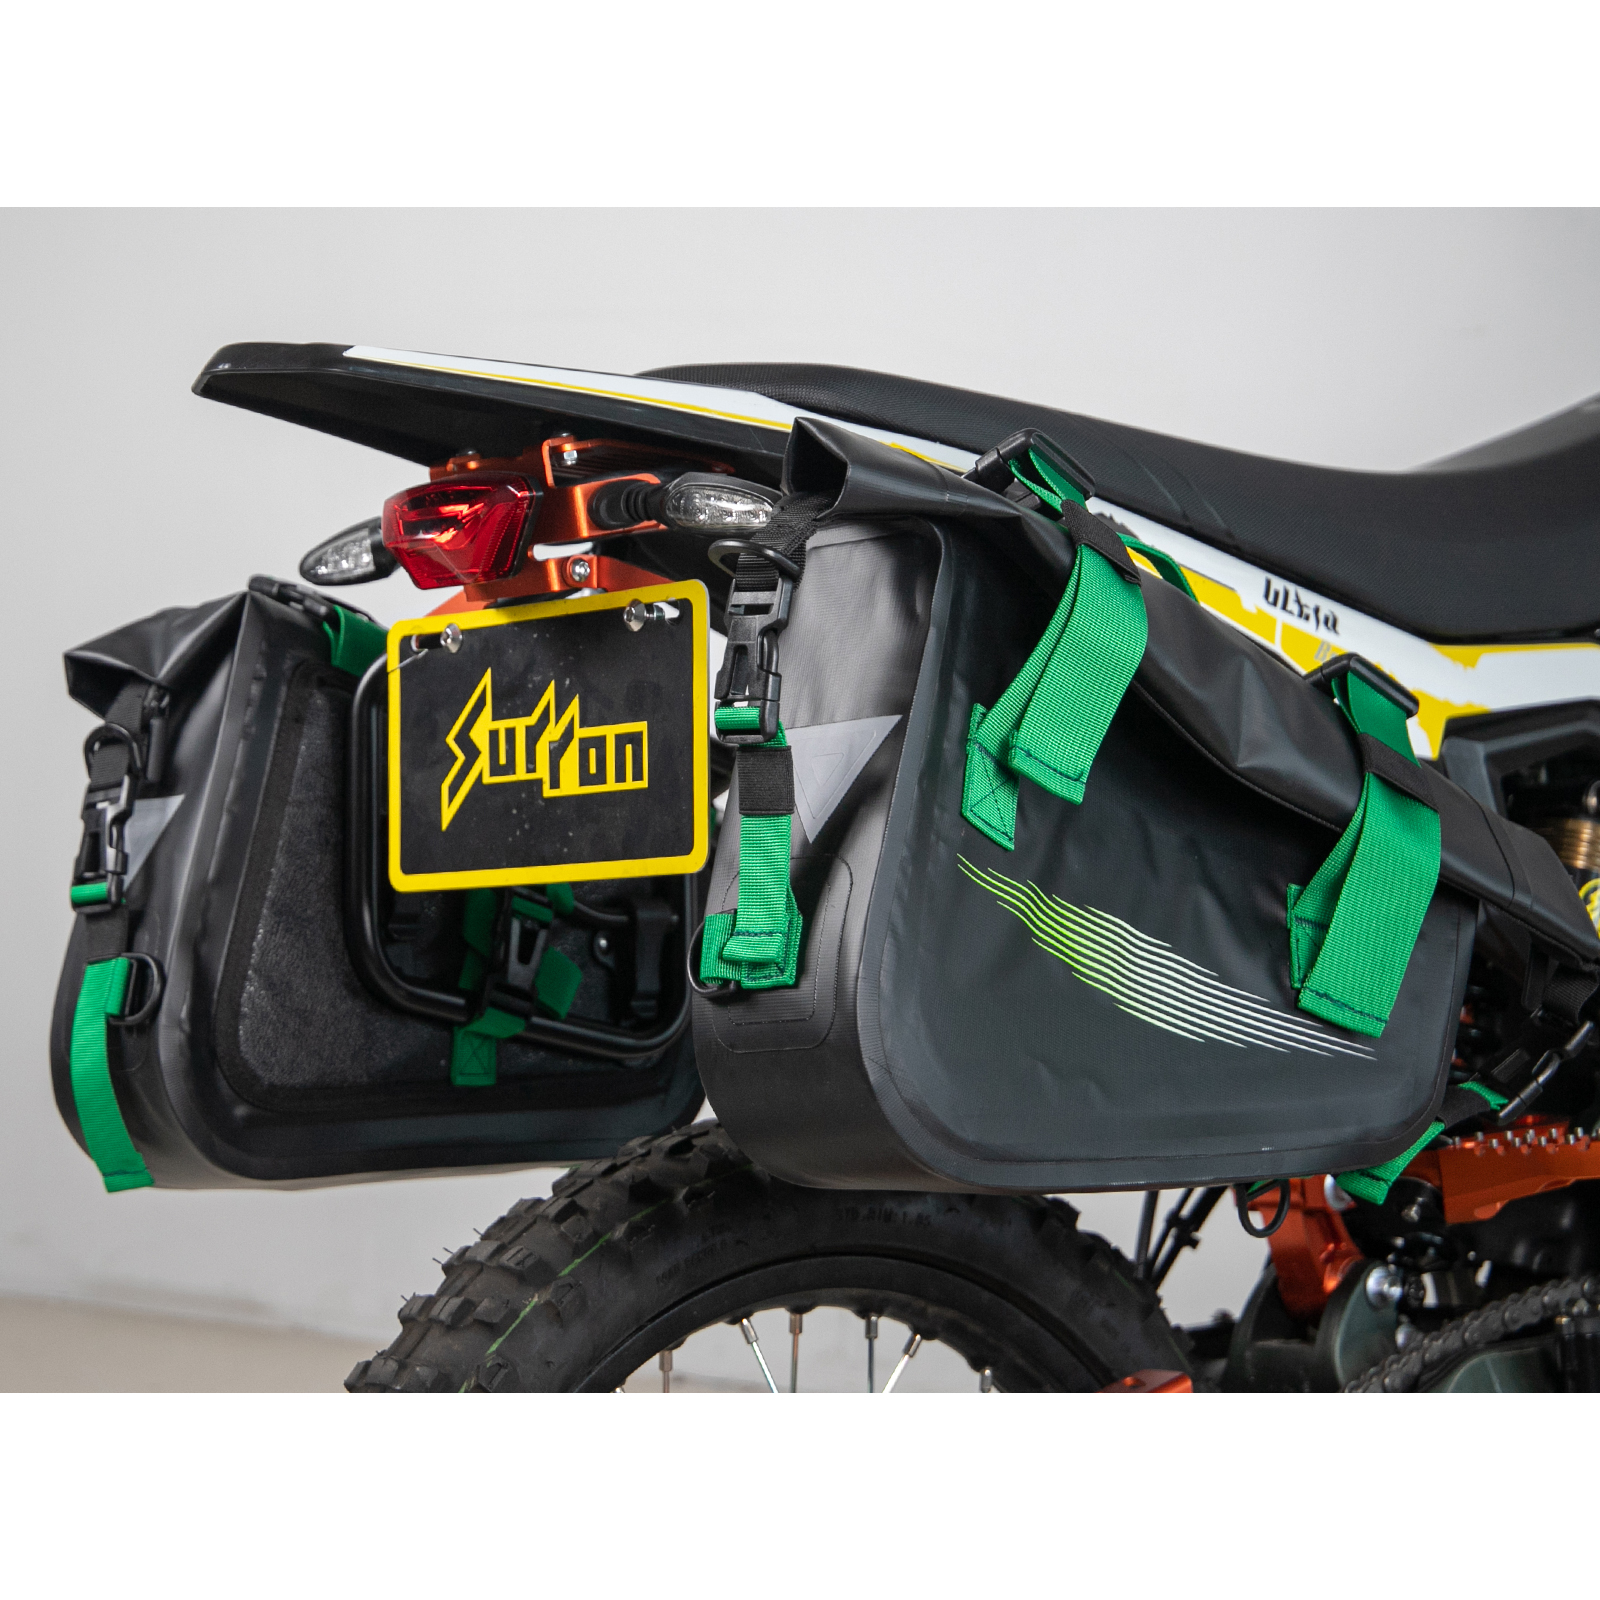 Tarazon Side Bag and Rack Combo for Dirt Bikes